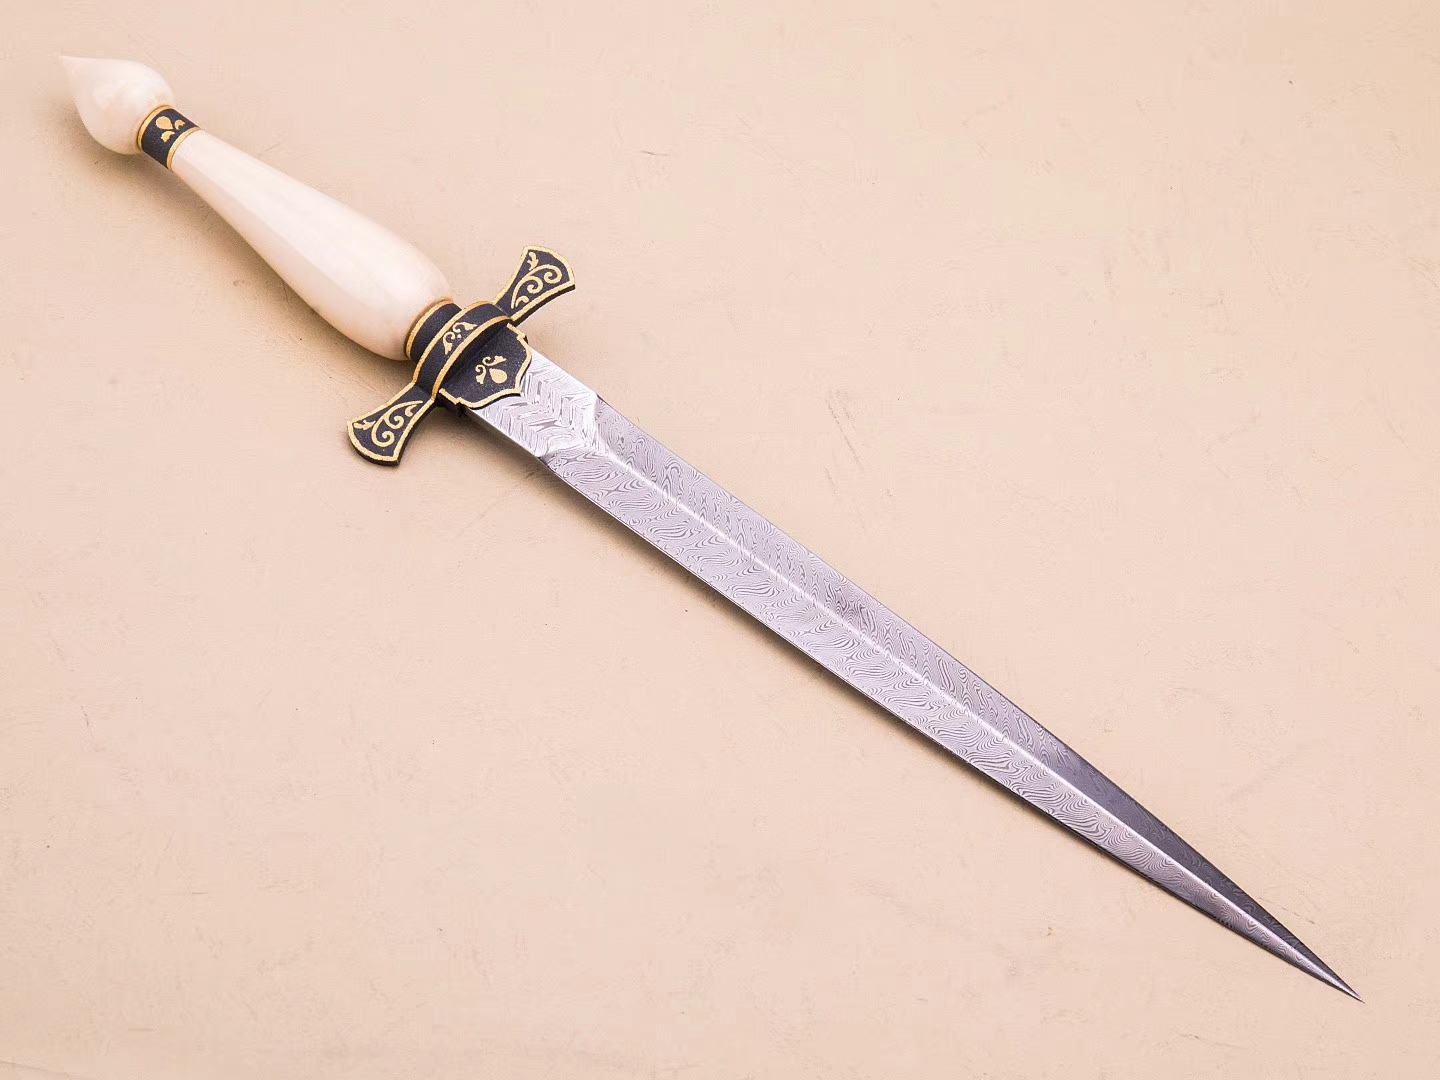 【维拉短剑】       俄罗斯刀具大师维拉基米尔全手工打造,孤品唯一